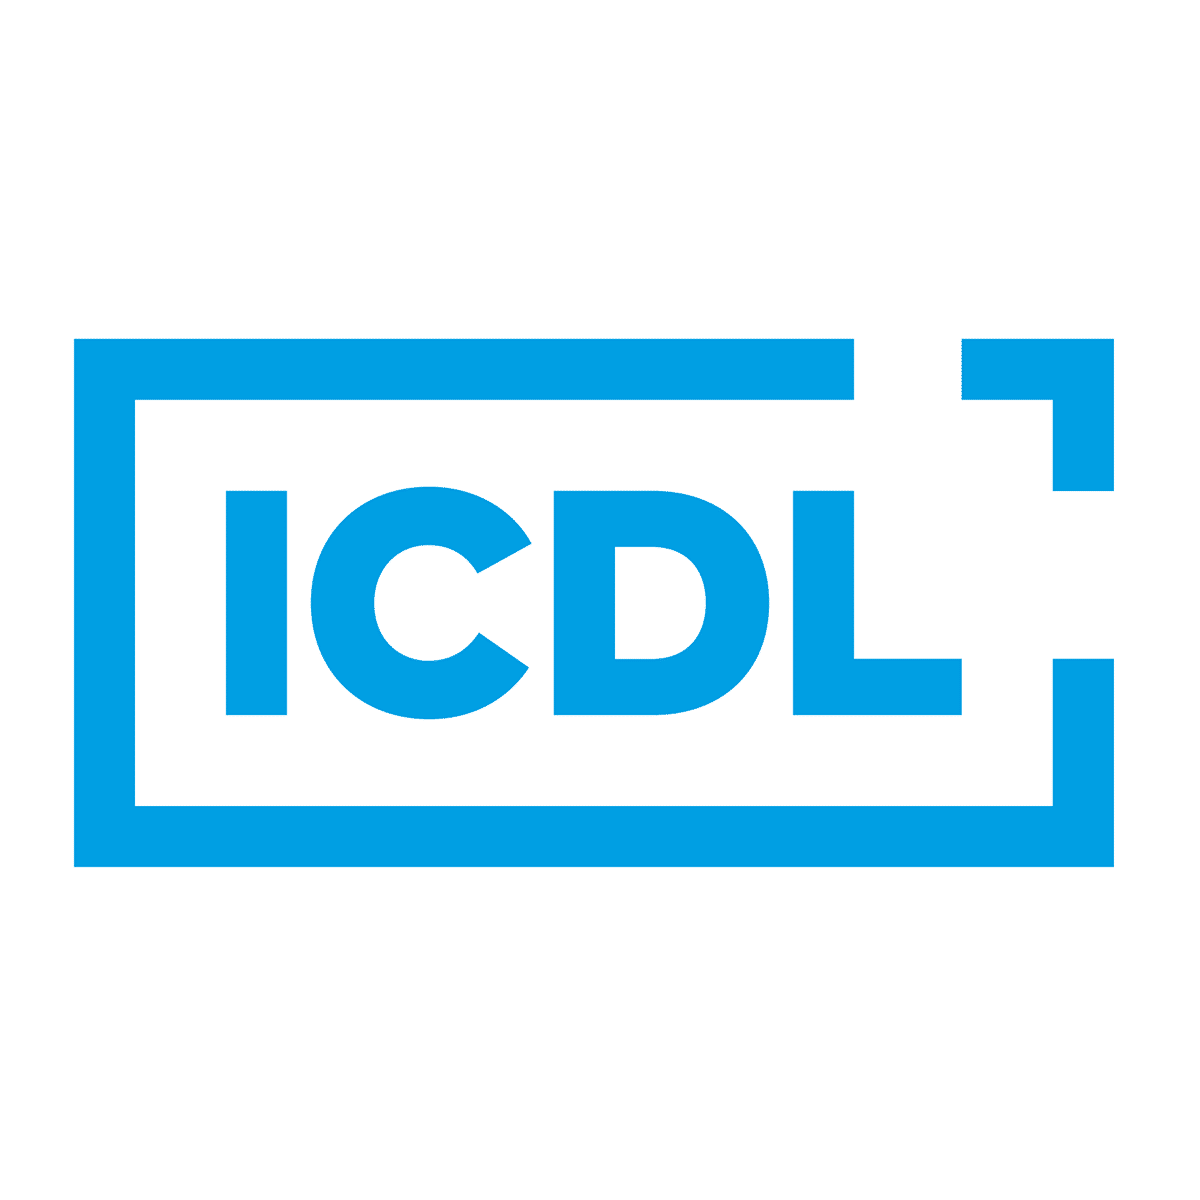 Circolare n. 186 - Avvio corsi ed esami Certificazioni ICDL (ex ECDL)